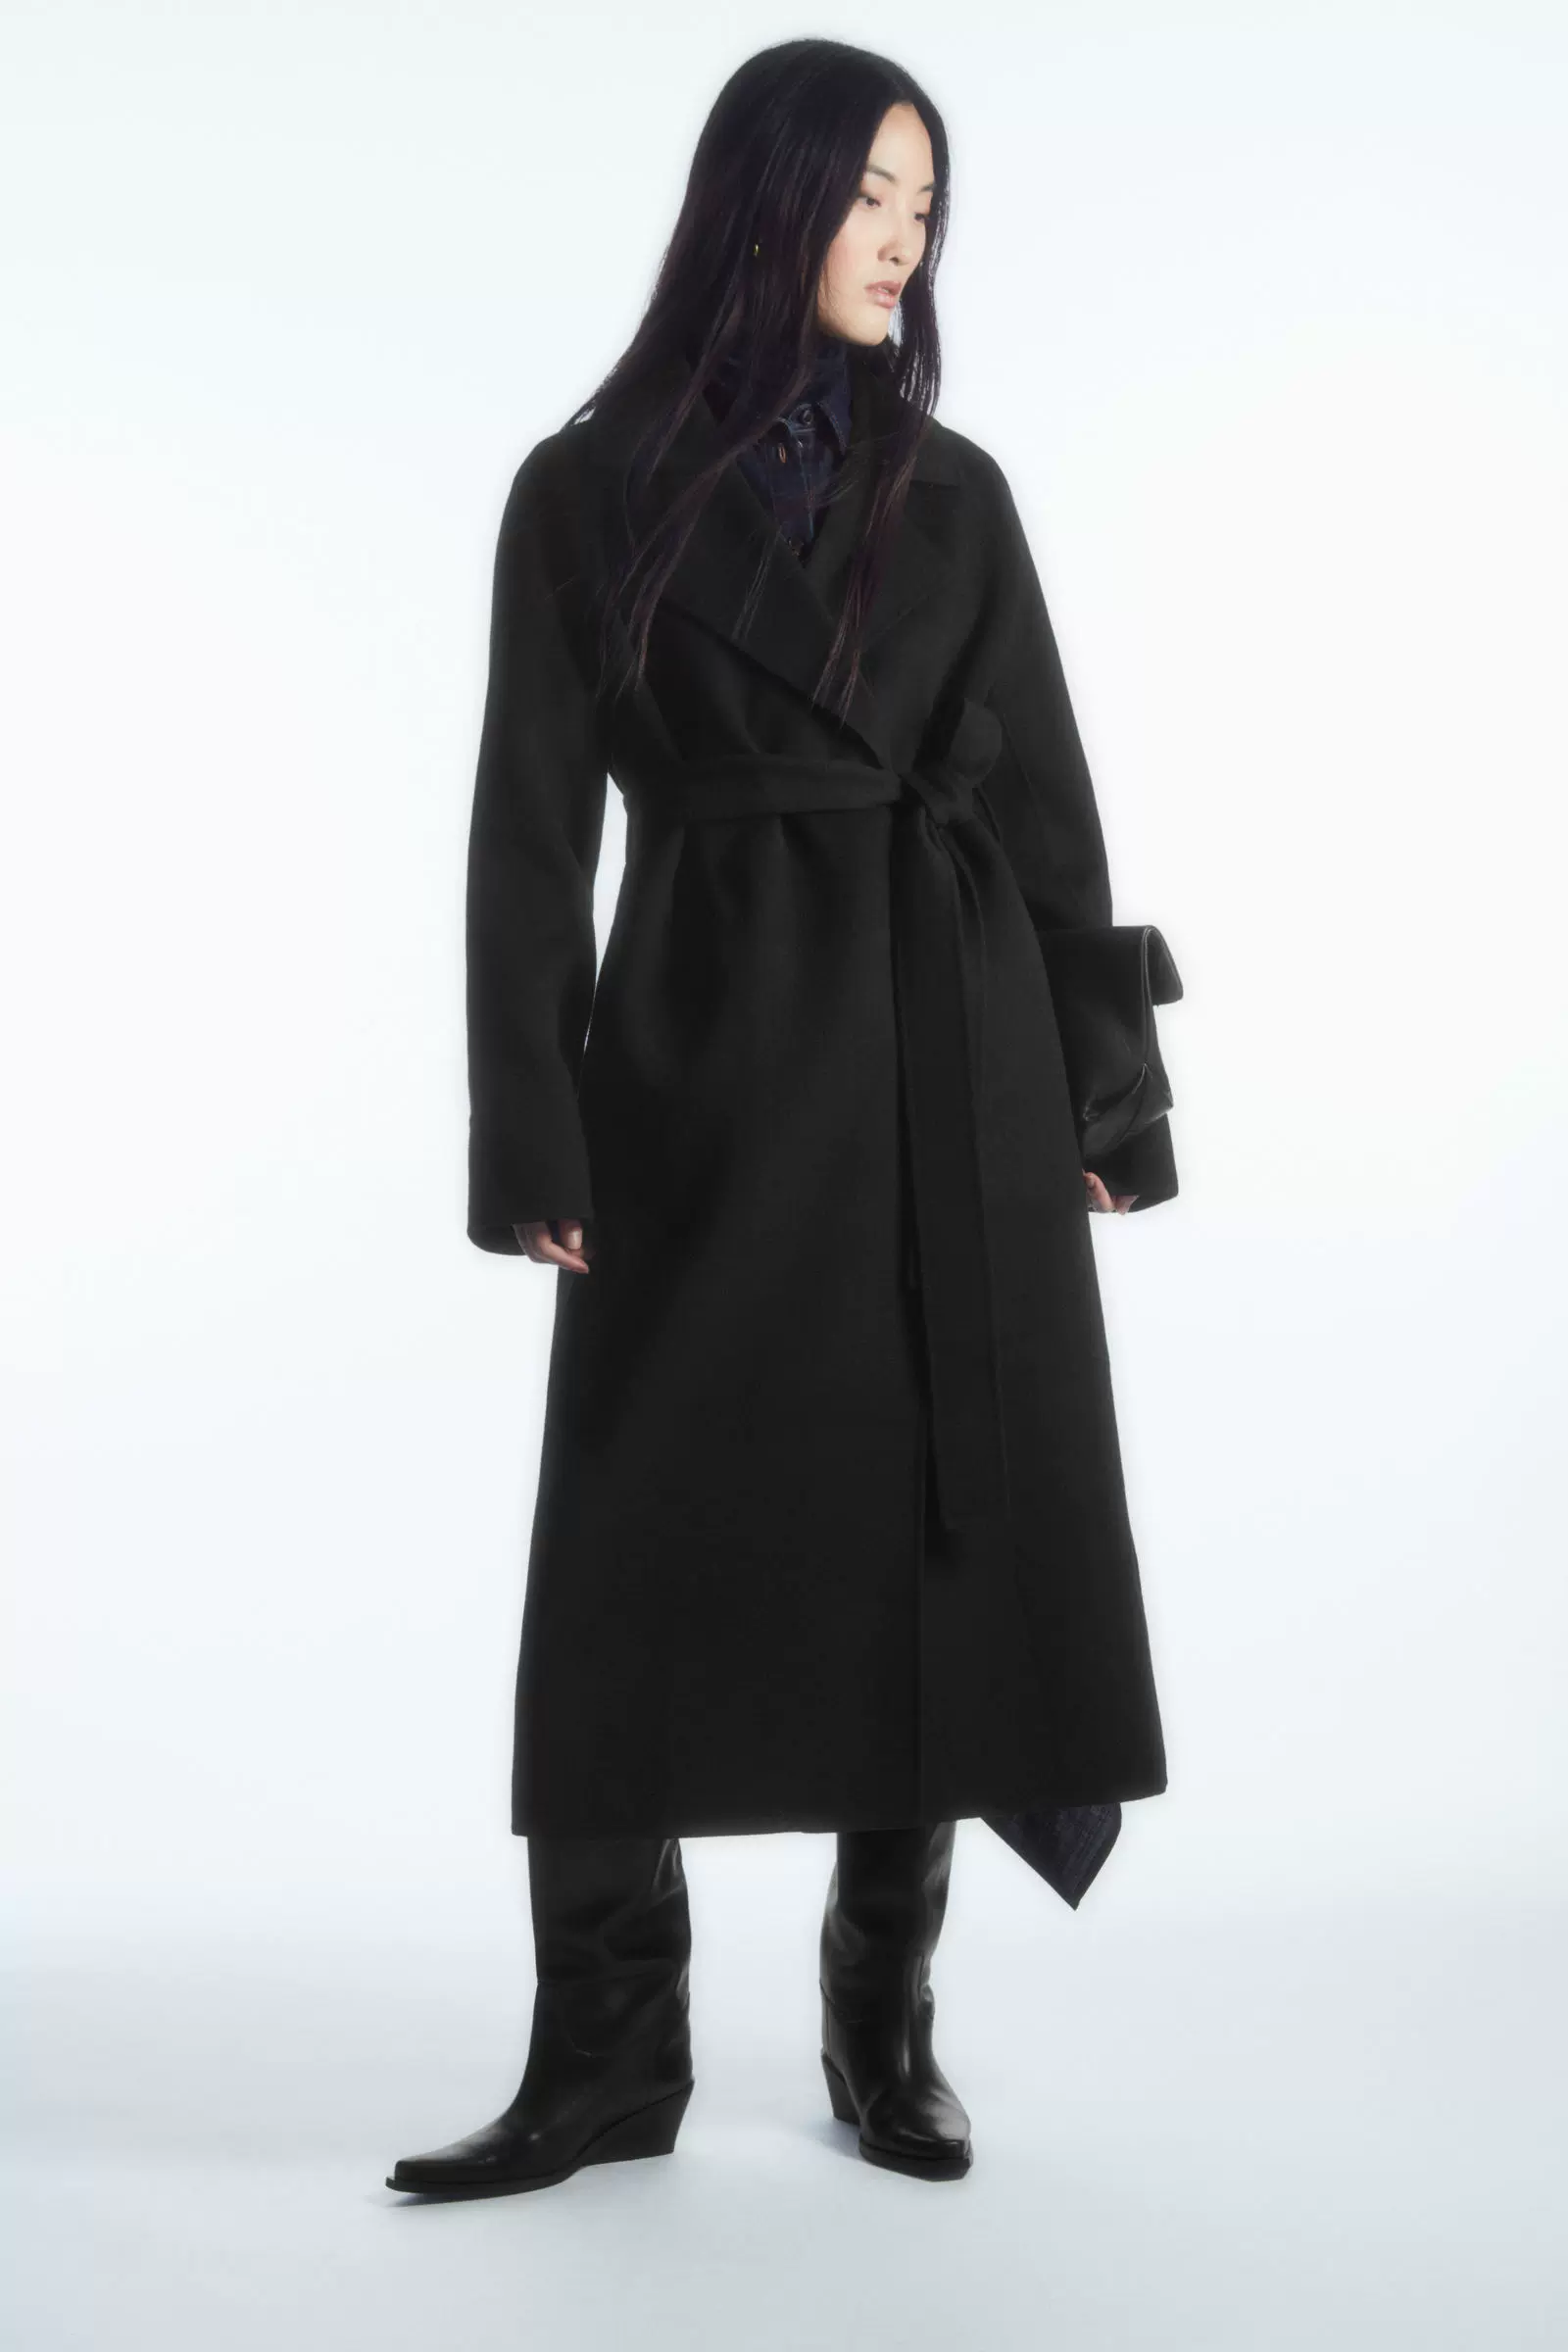 COS女装秋冬新品休闲版型立领暗门襟羊毛大衣外套黑色1032645001-Taobao